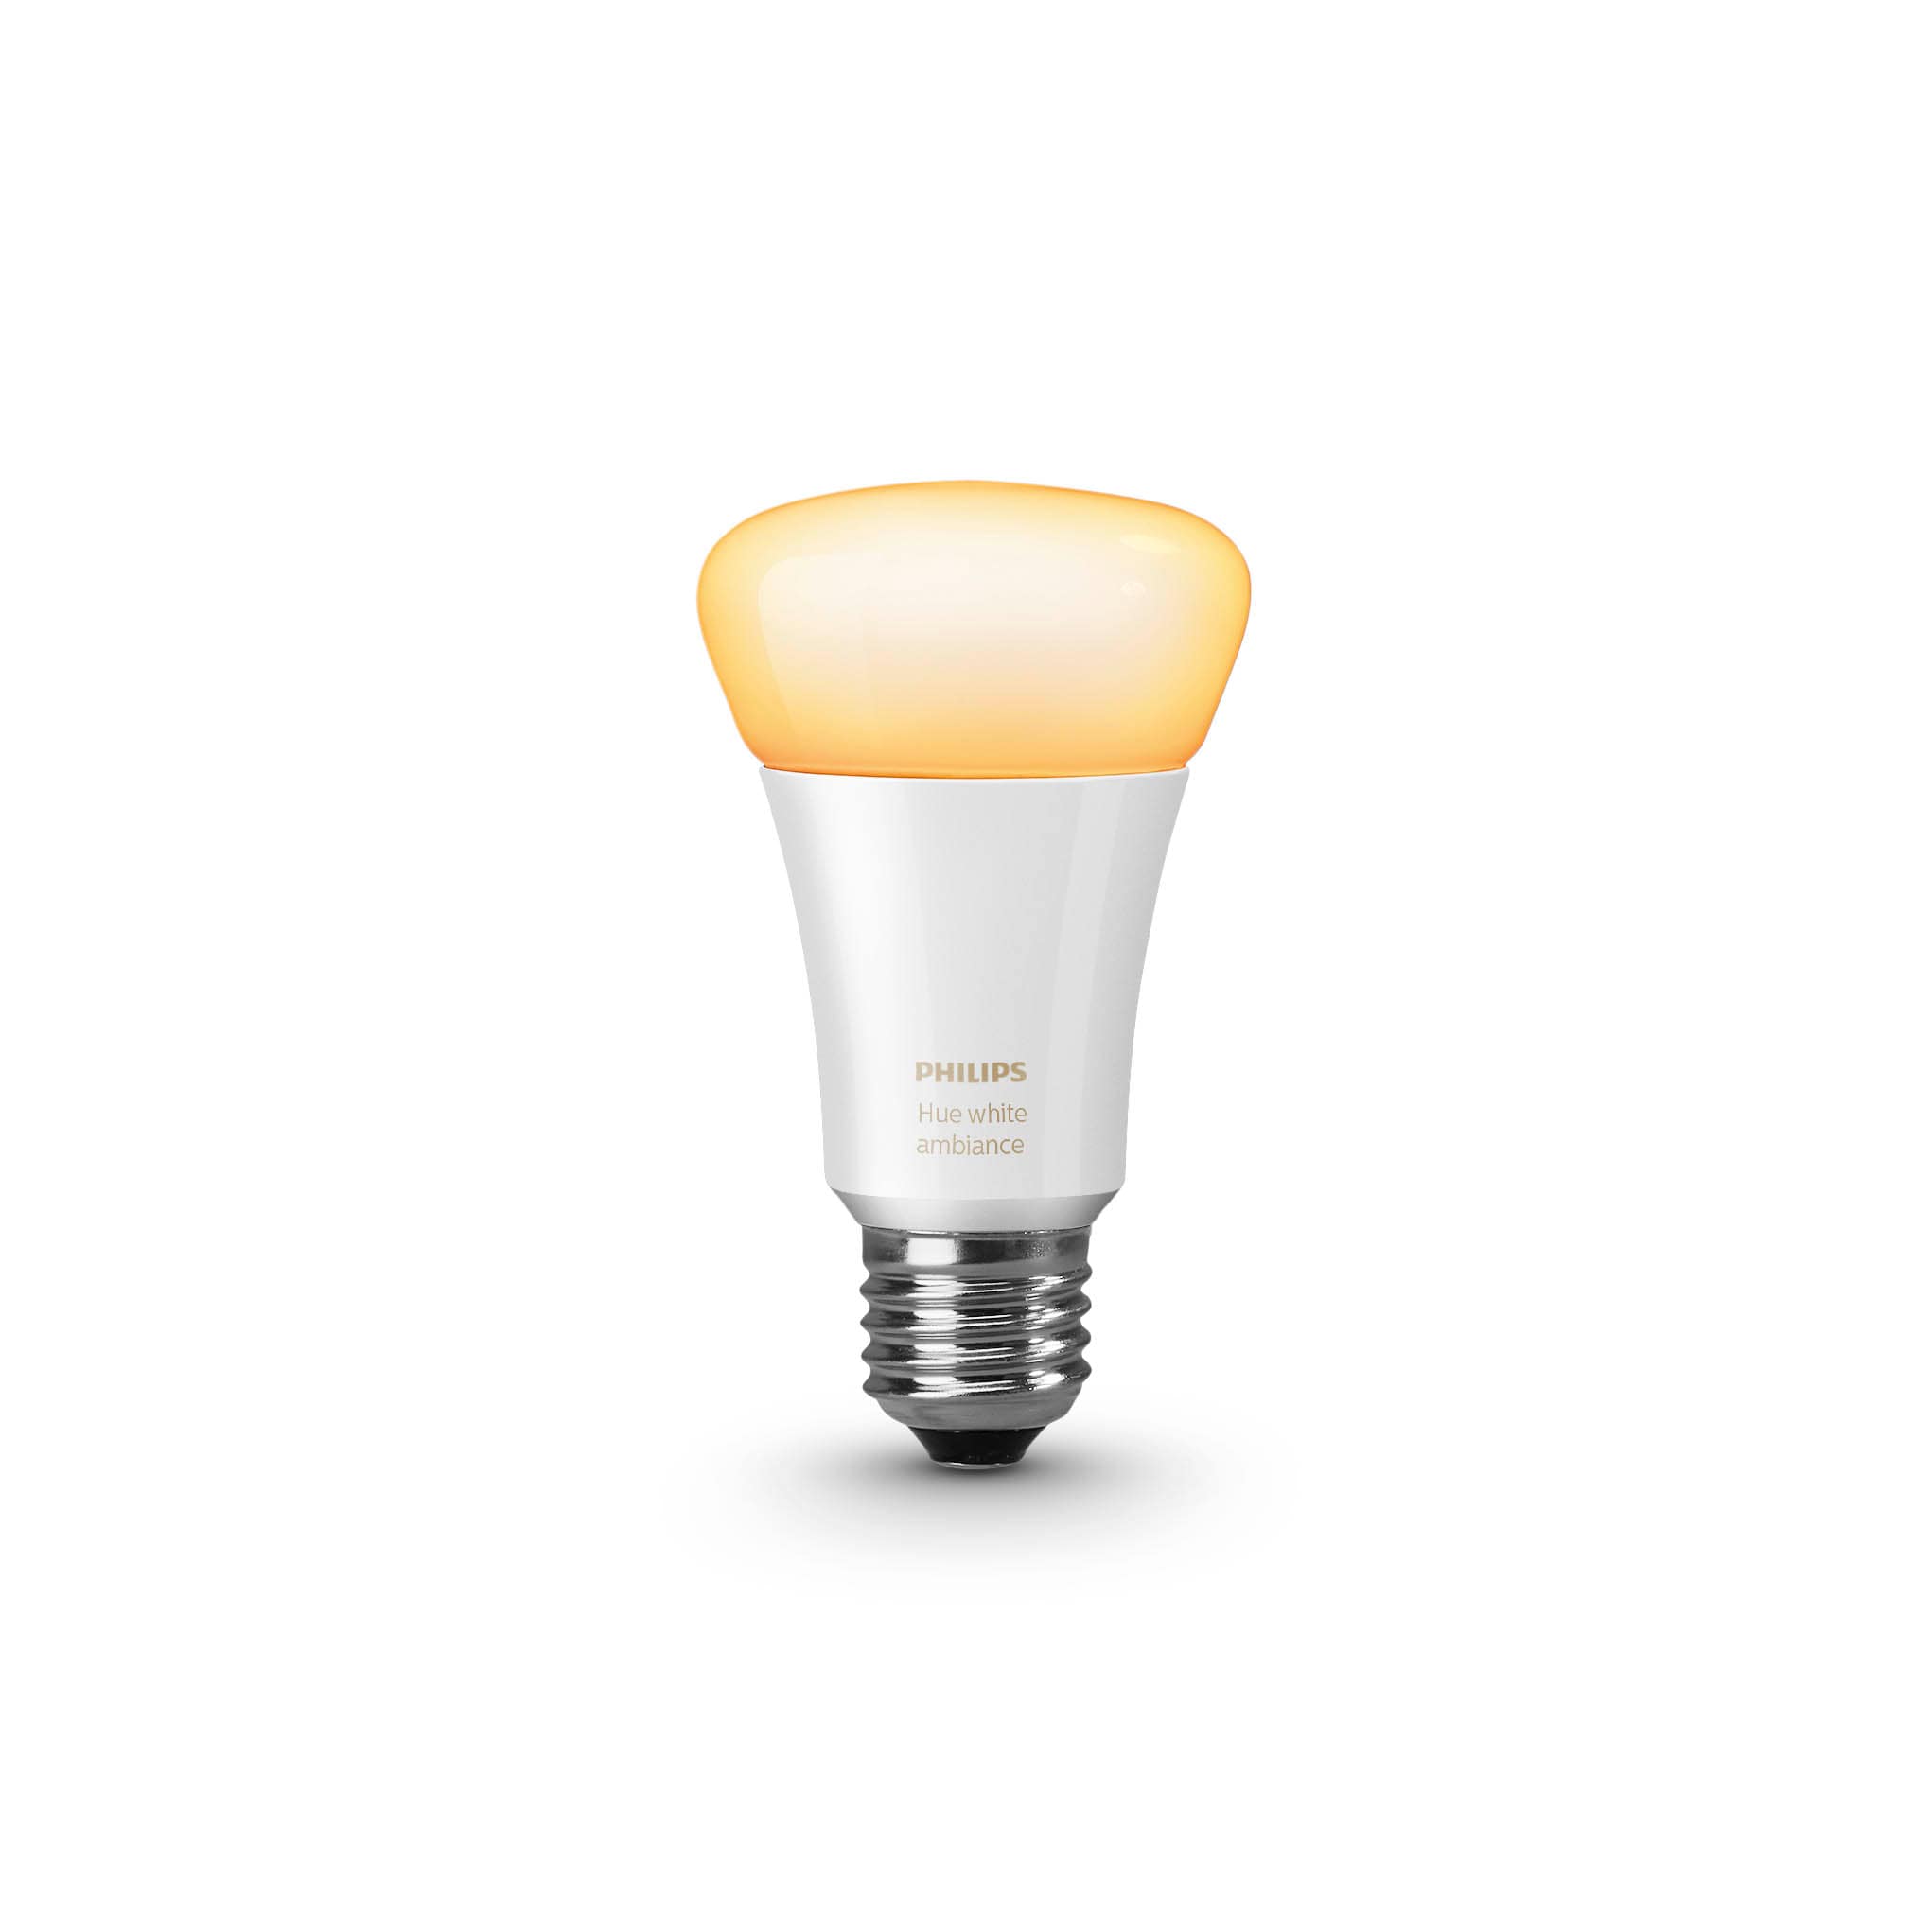 Philips Hue white ambiance: Neue Smart Home-Lampen für ...